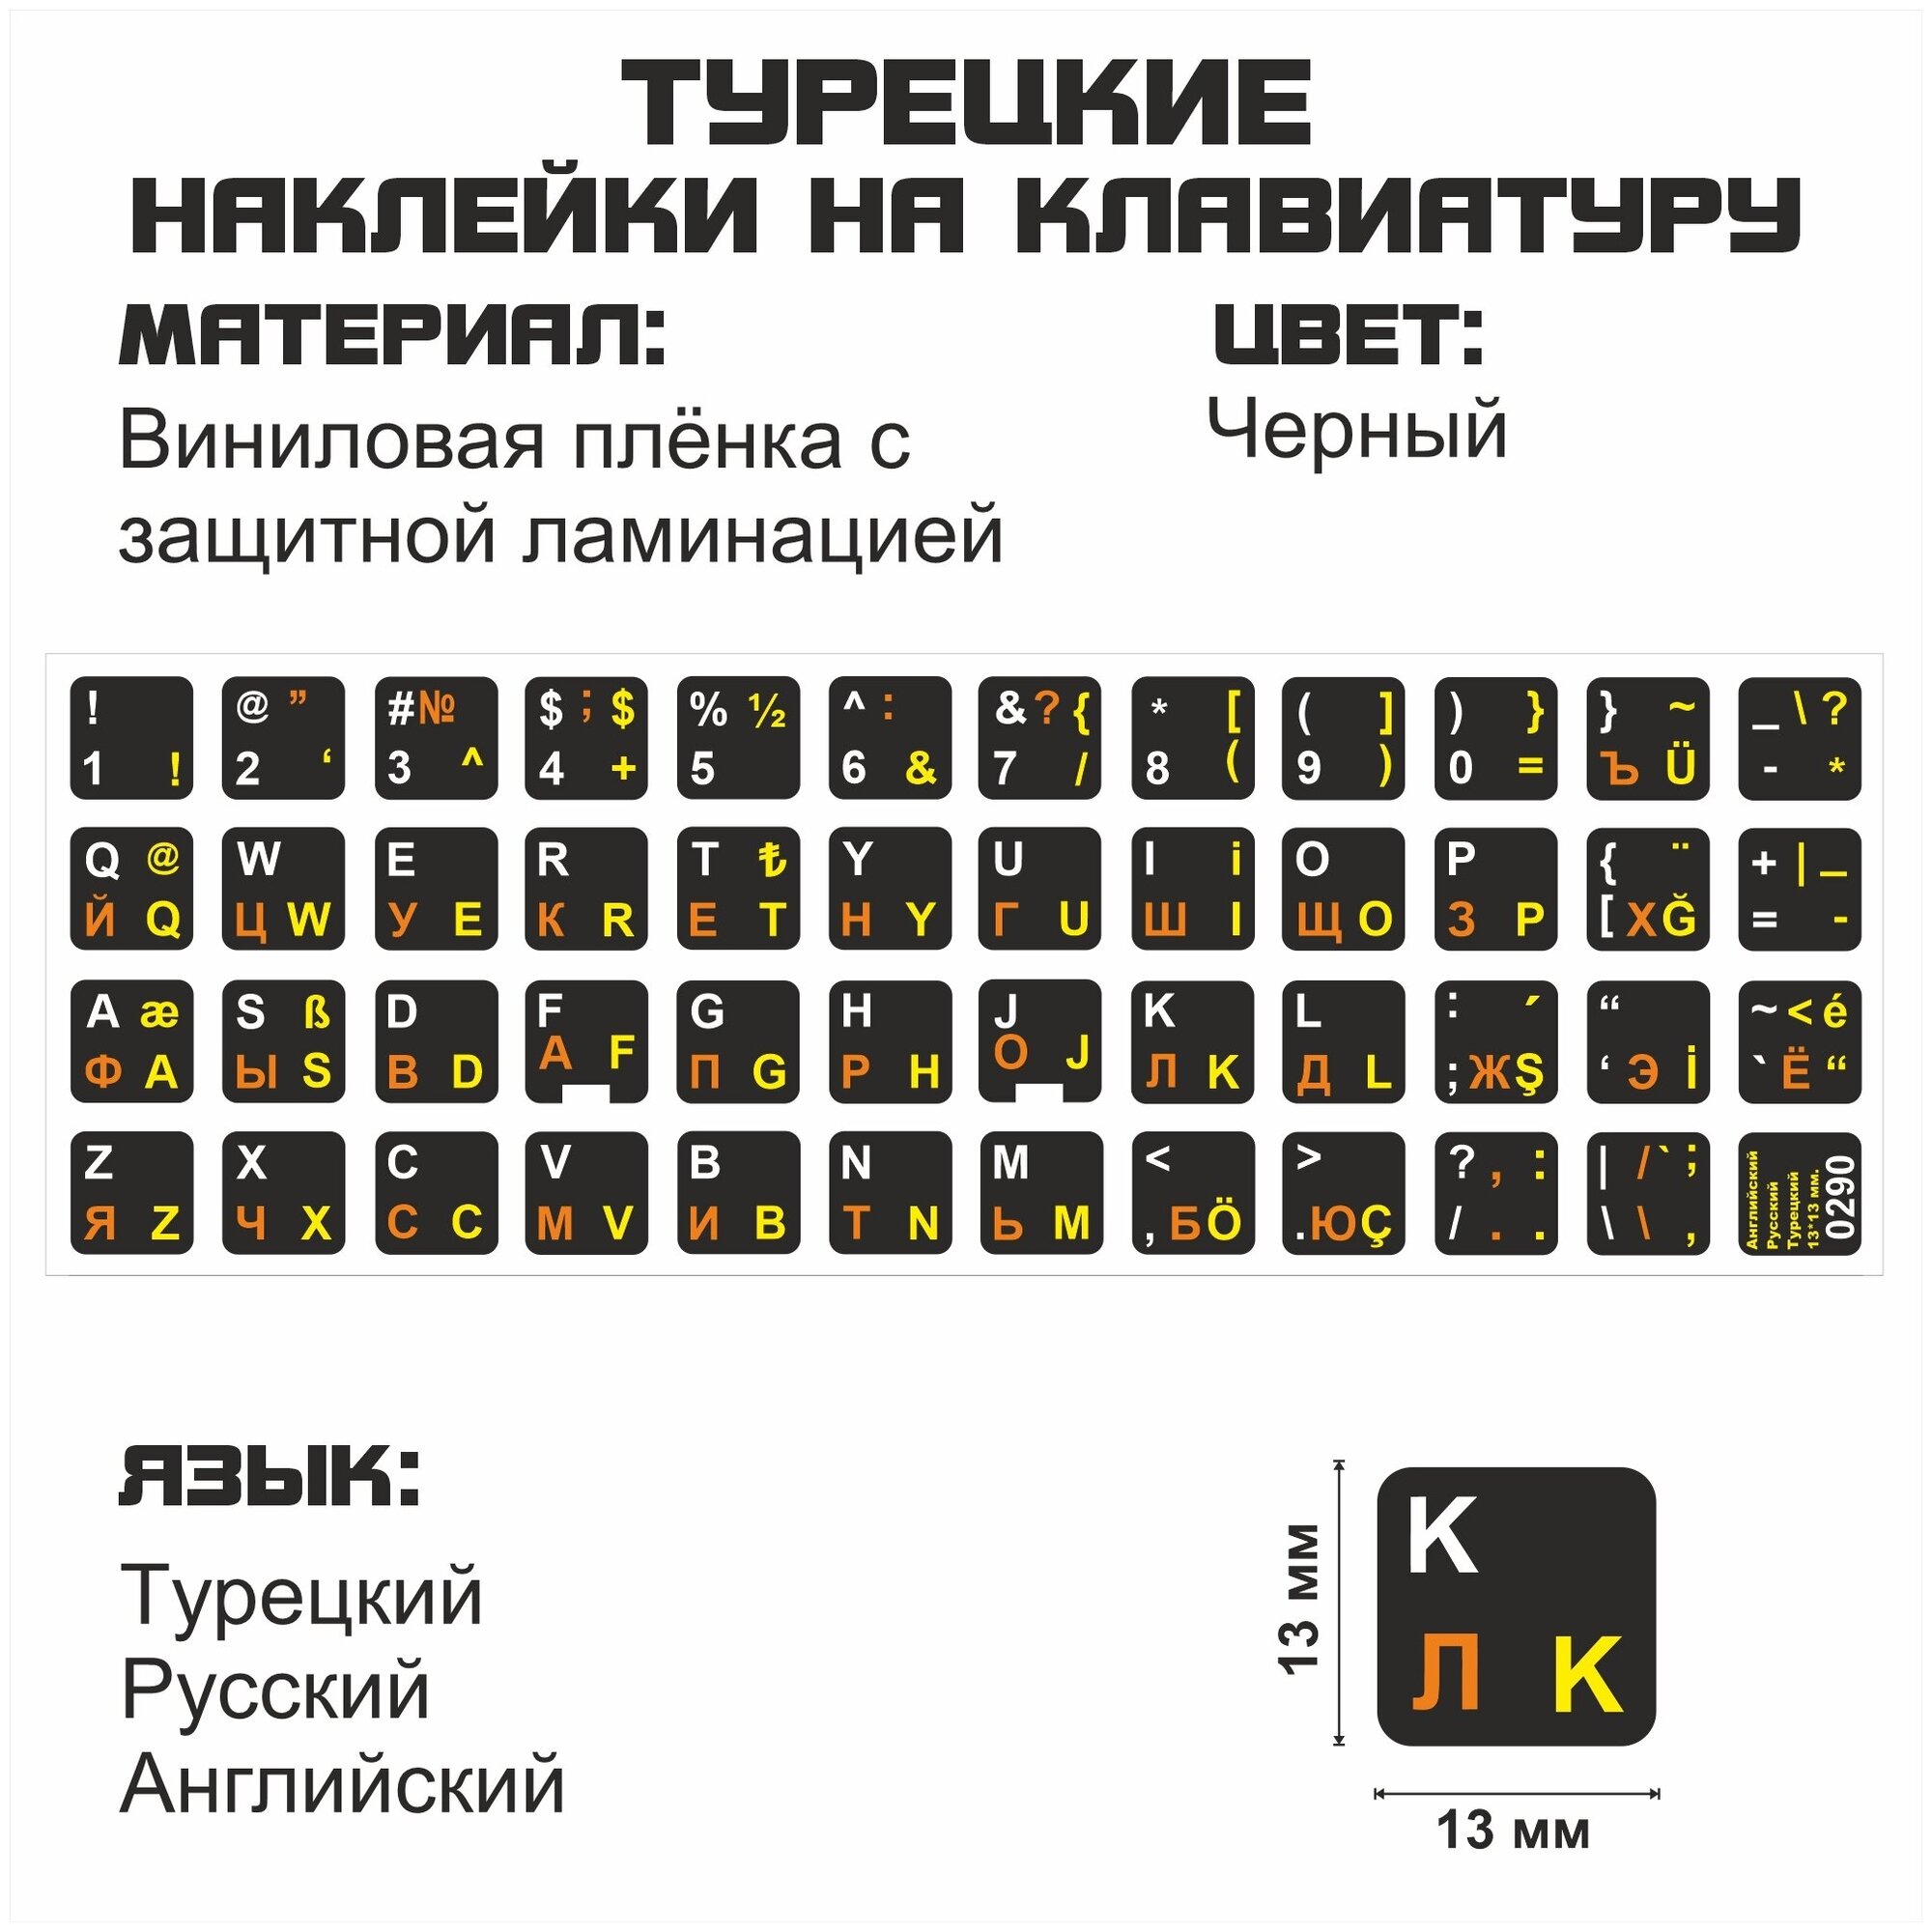 Турецкие, английские, русские буквы на клавиатуру, наклейки букв 13x13 мм.